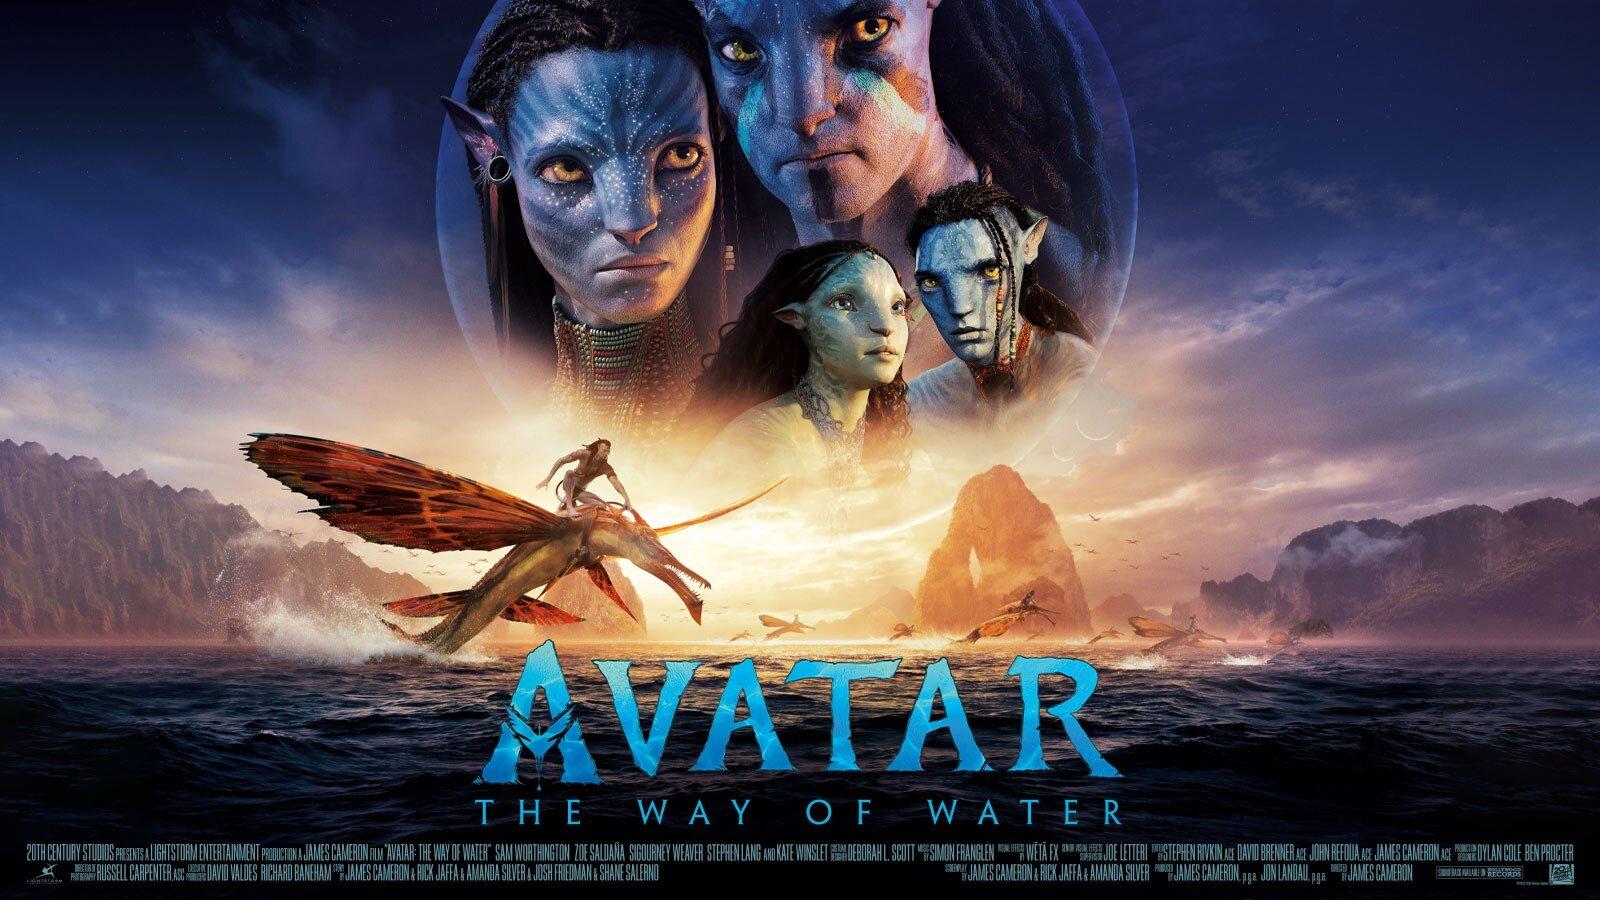 Avatar phần 2 đã được chờ đợi từ lâu và sự ra mắt của bộ phim cũng không làm người hâm mộ thất vọng. Với doanh thu ồn ào, phim được đánh giá cao bởi sự chăm chút tới từng chi tiết và câu chuyện hấp dẫn.